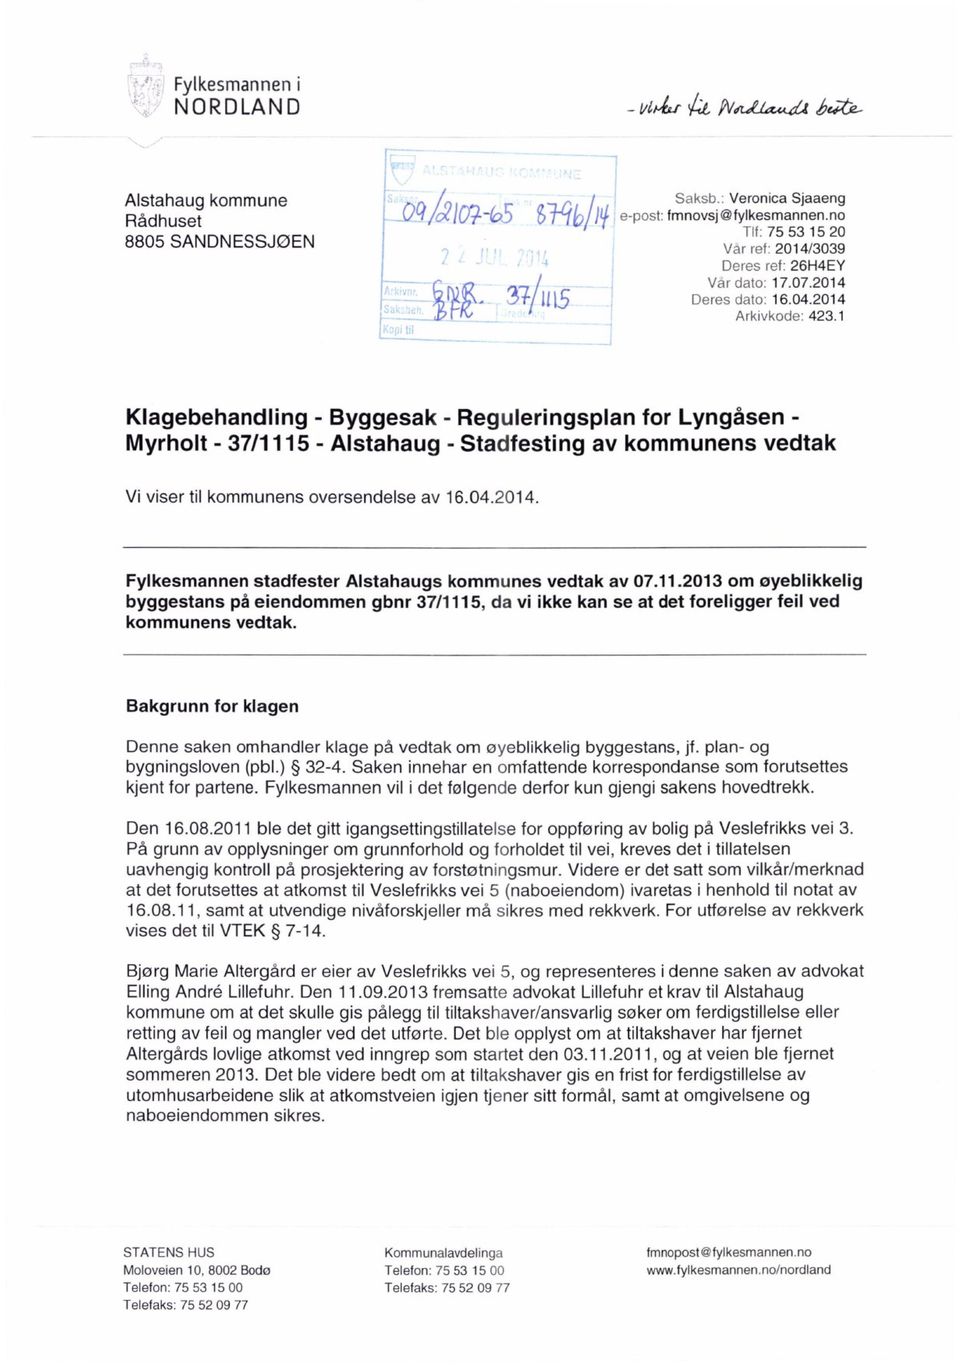 1 Klagebehandling - Byggesak - Reguleringsplan for Lyngåsen - Myrholt - 37/1115 - Alstahaug - Stadfesting av kommunens vedtak Vi viser til kommunens oversendelse av 16.04.2014.